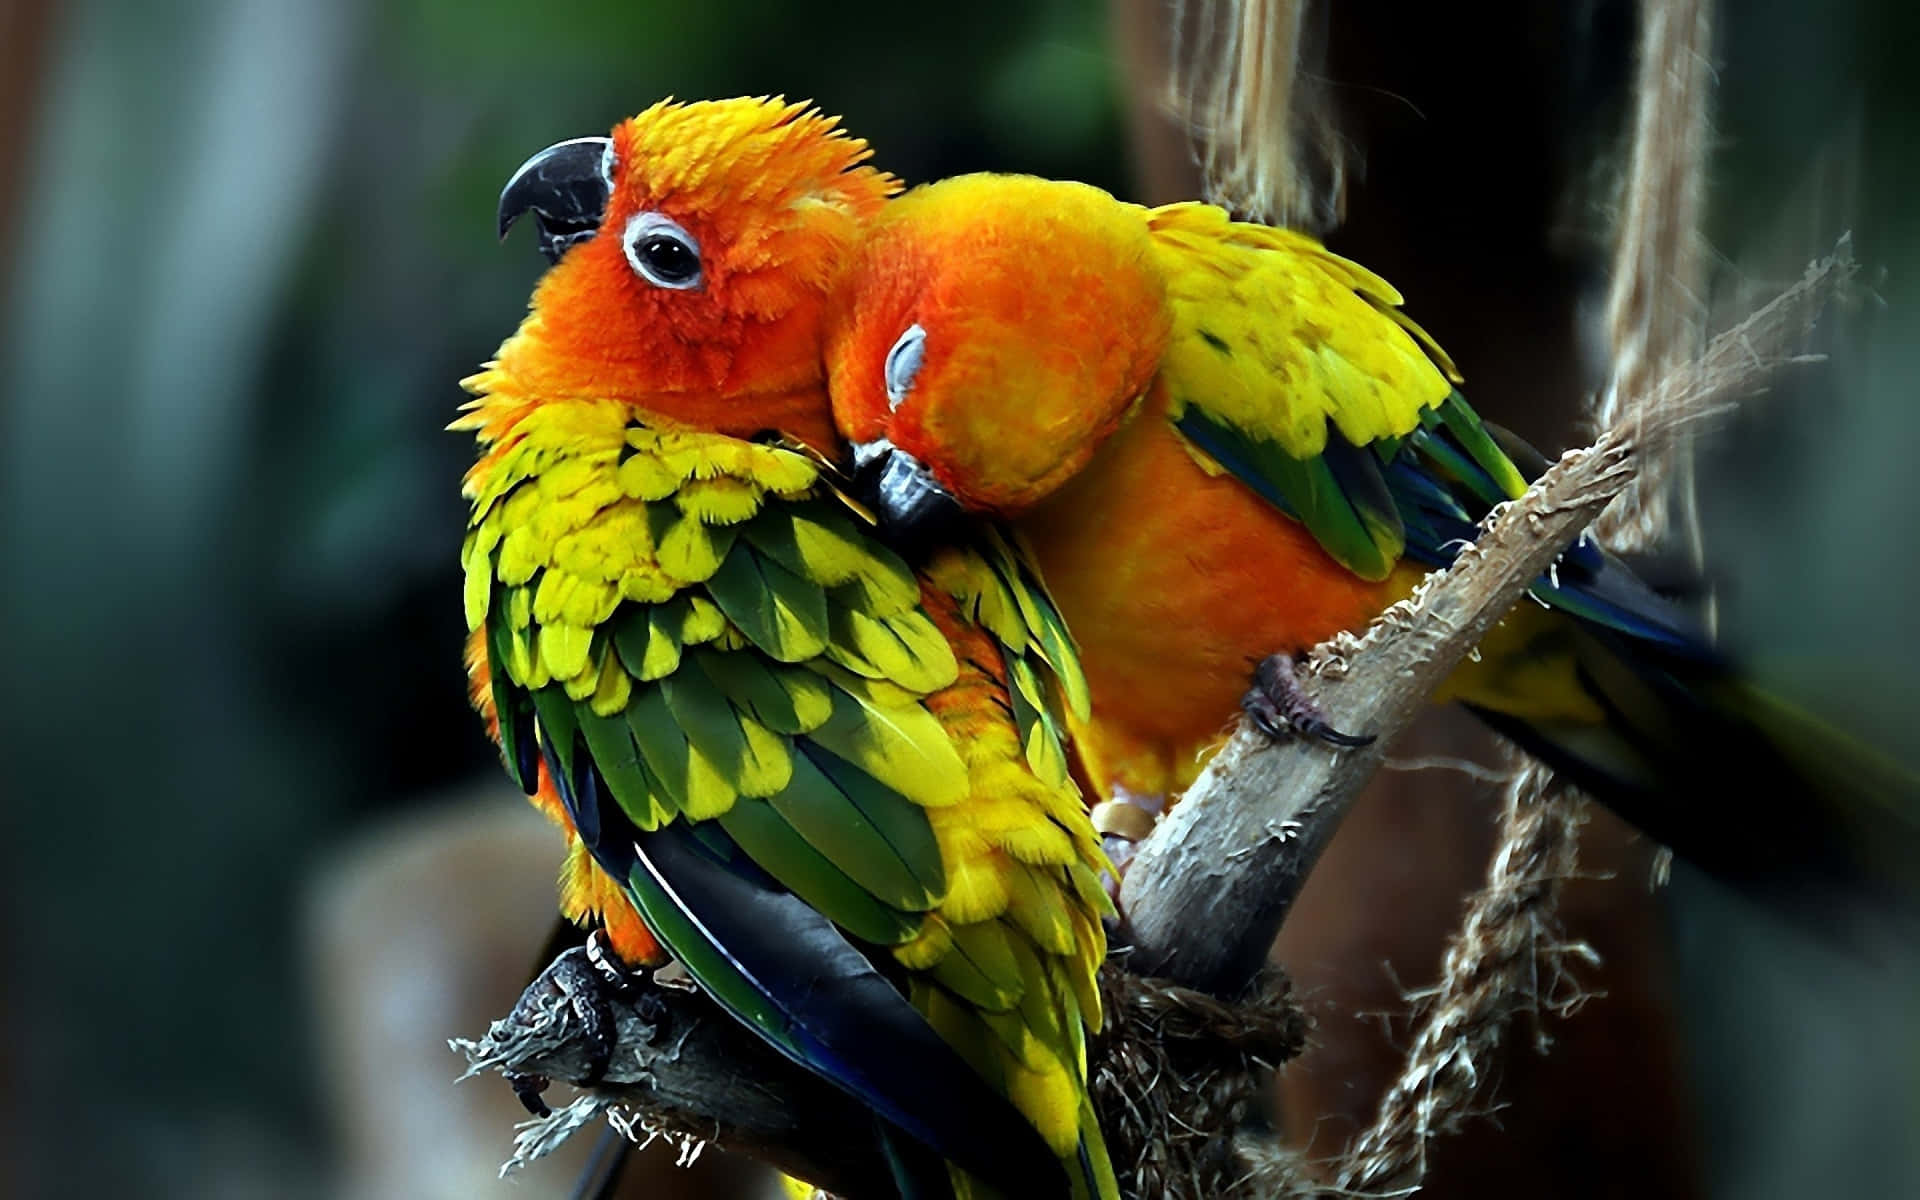 Etsmukt Symbol På Kærlighed, Repræsenteret Af Disse To Kærlighedsfugle!